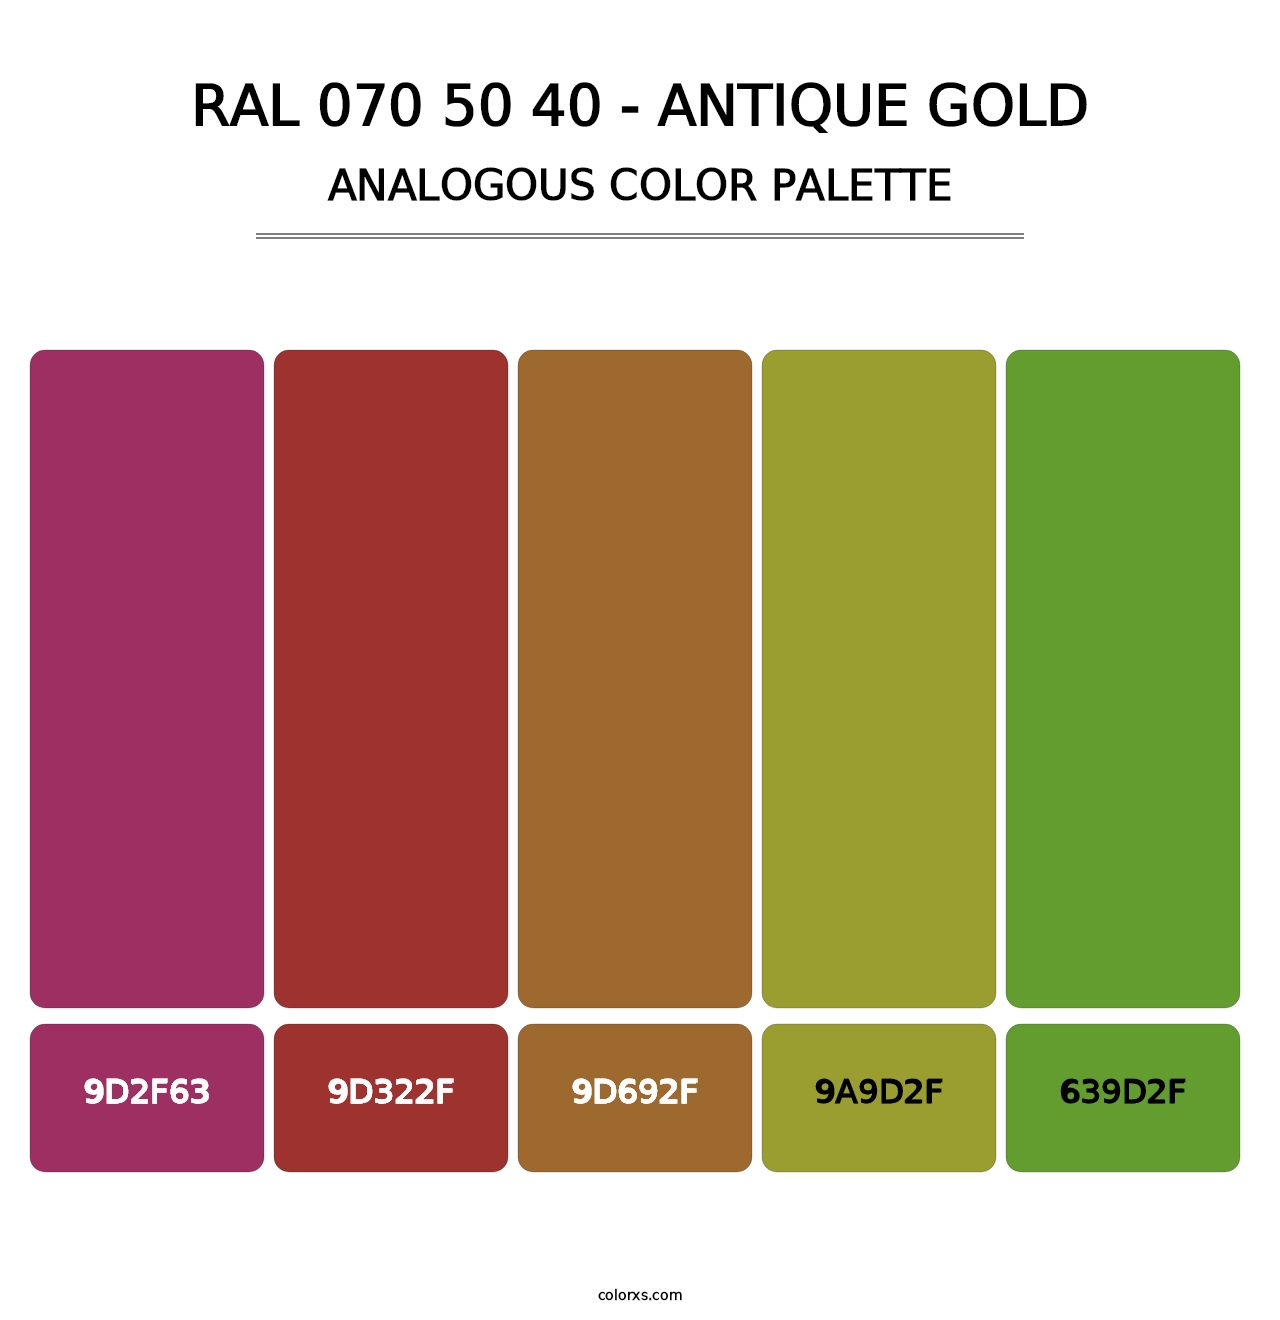 RAL 070 50 40 - Antique Gold - Analogous Color Palette